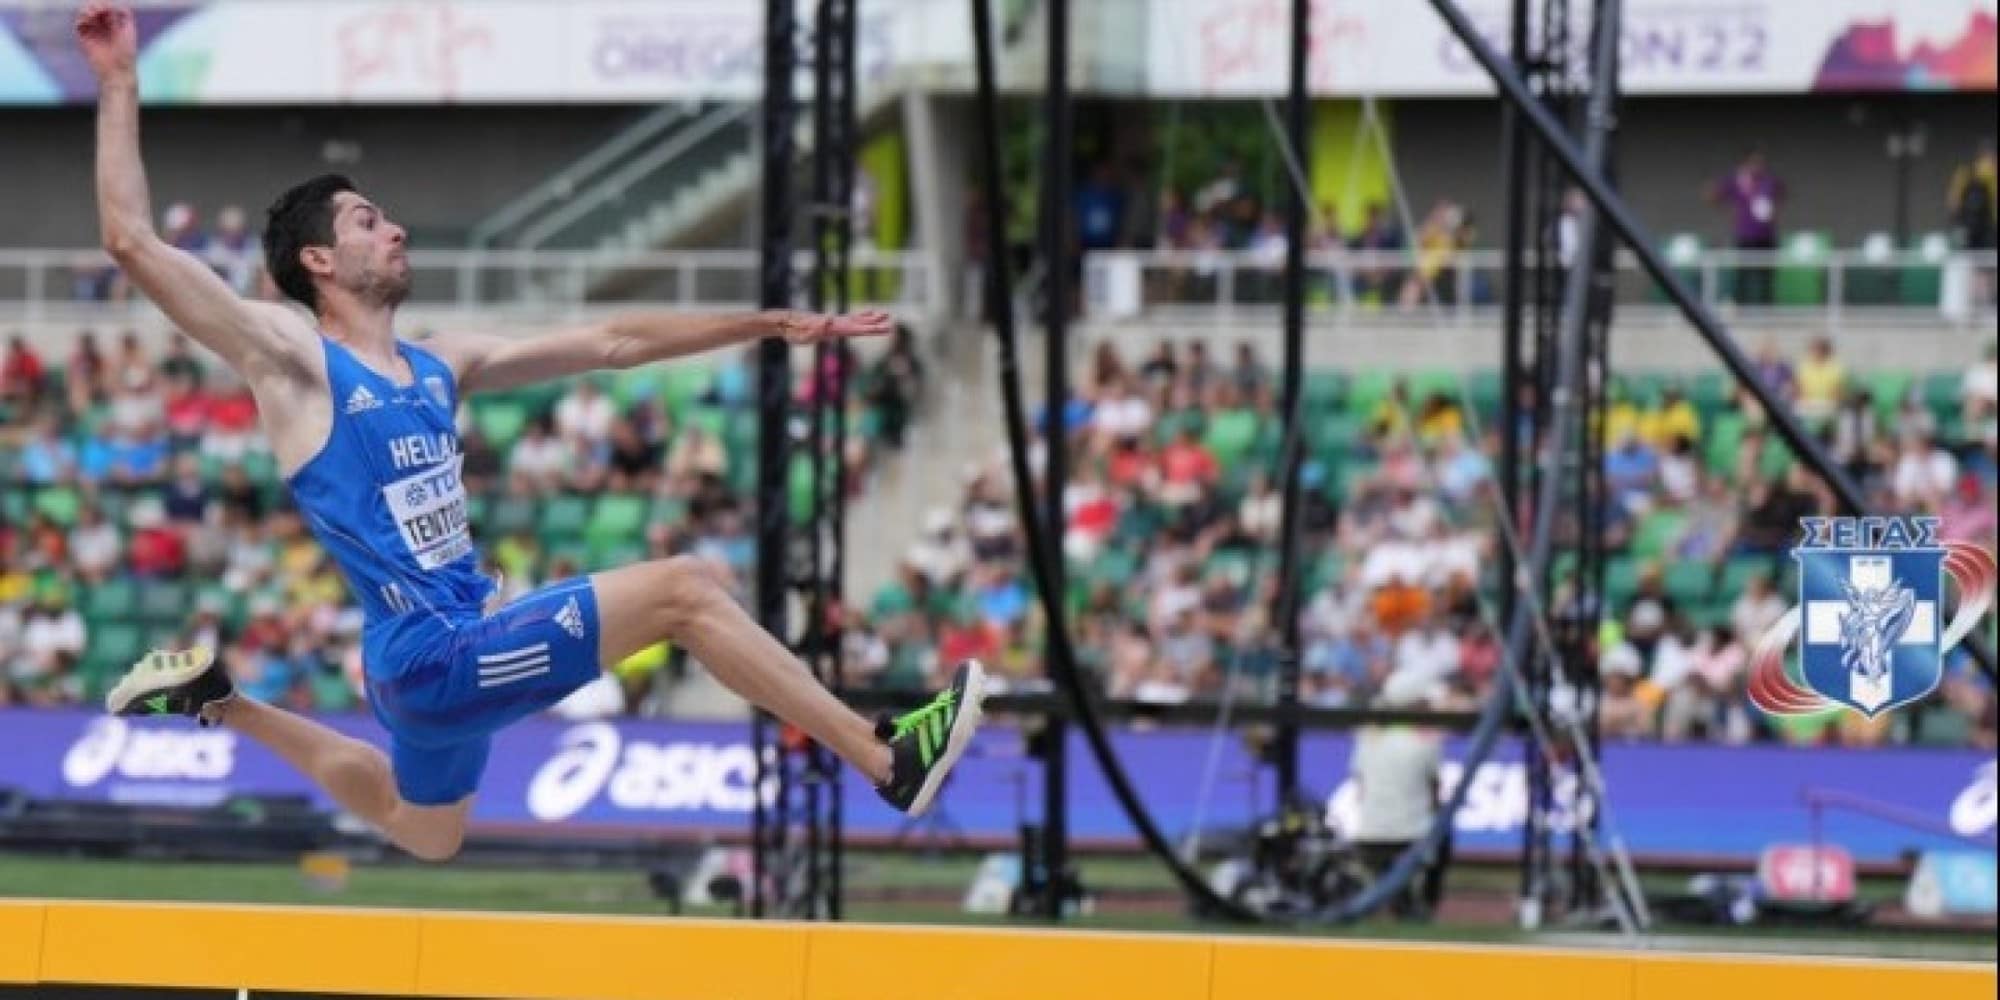 Το ασημένιο μετάλλιο κατέκτησε ο Μίλτος Τεντόγλου με 8.32 στον τελικό του μήκους στο Παγκόσμιο πρωτάθλημα στίβου